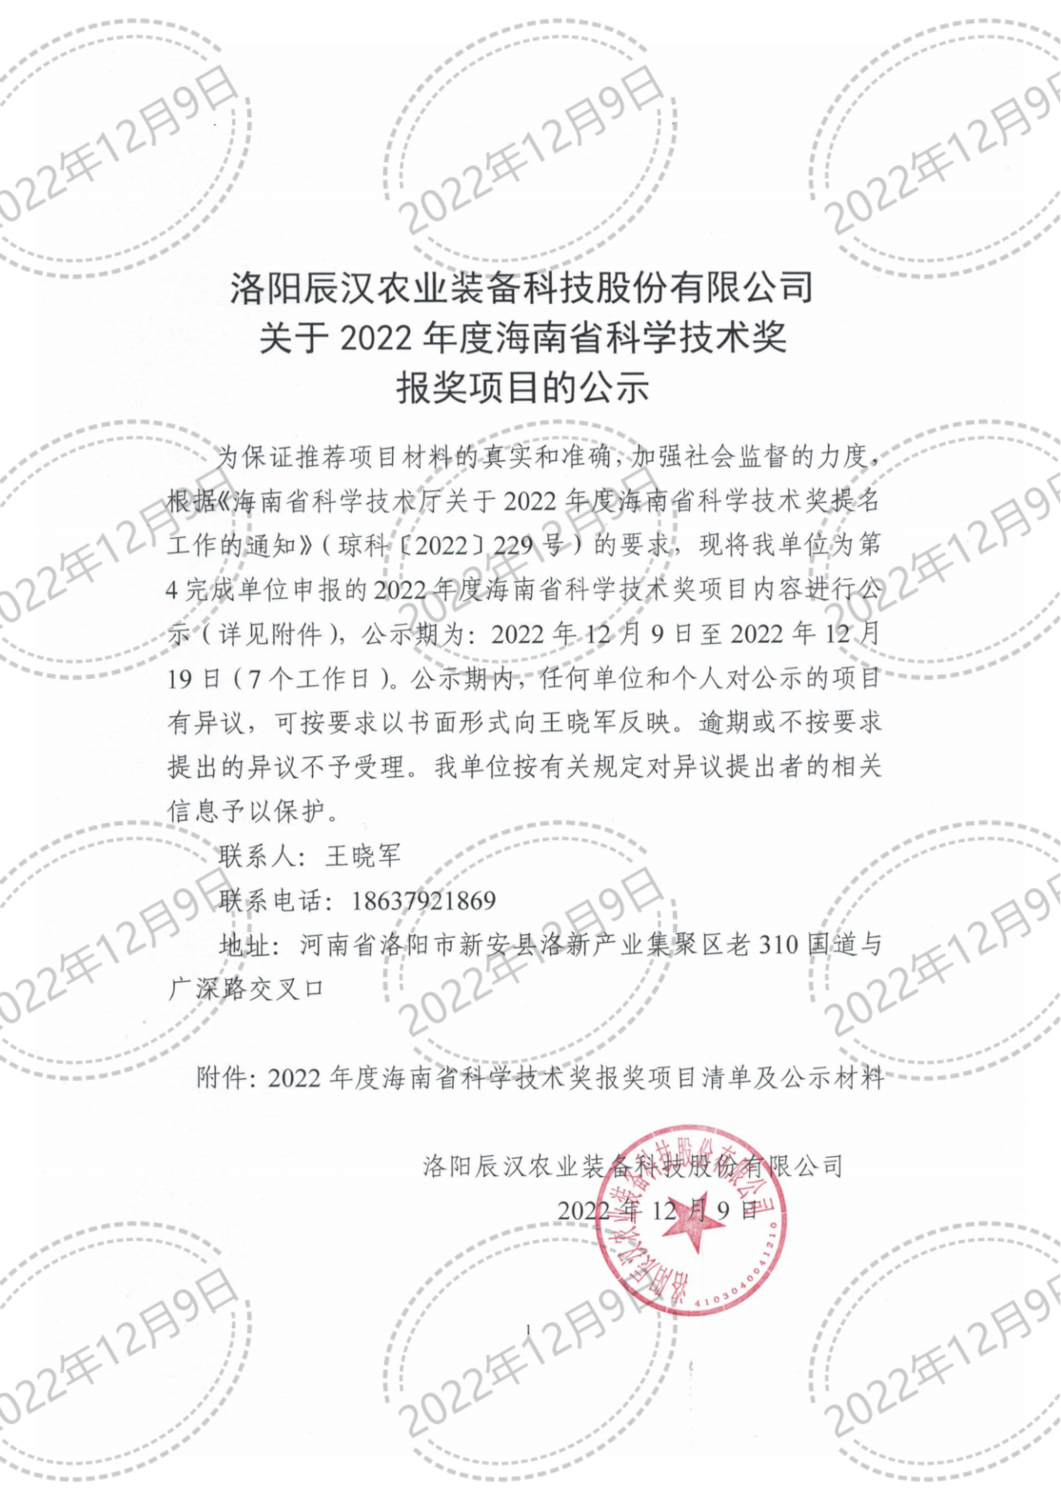 洛阳辰汉关于2022年度海南省科学技术奖 报奖项目的公示(1)_00_00.png